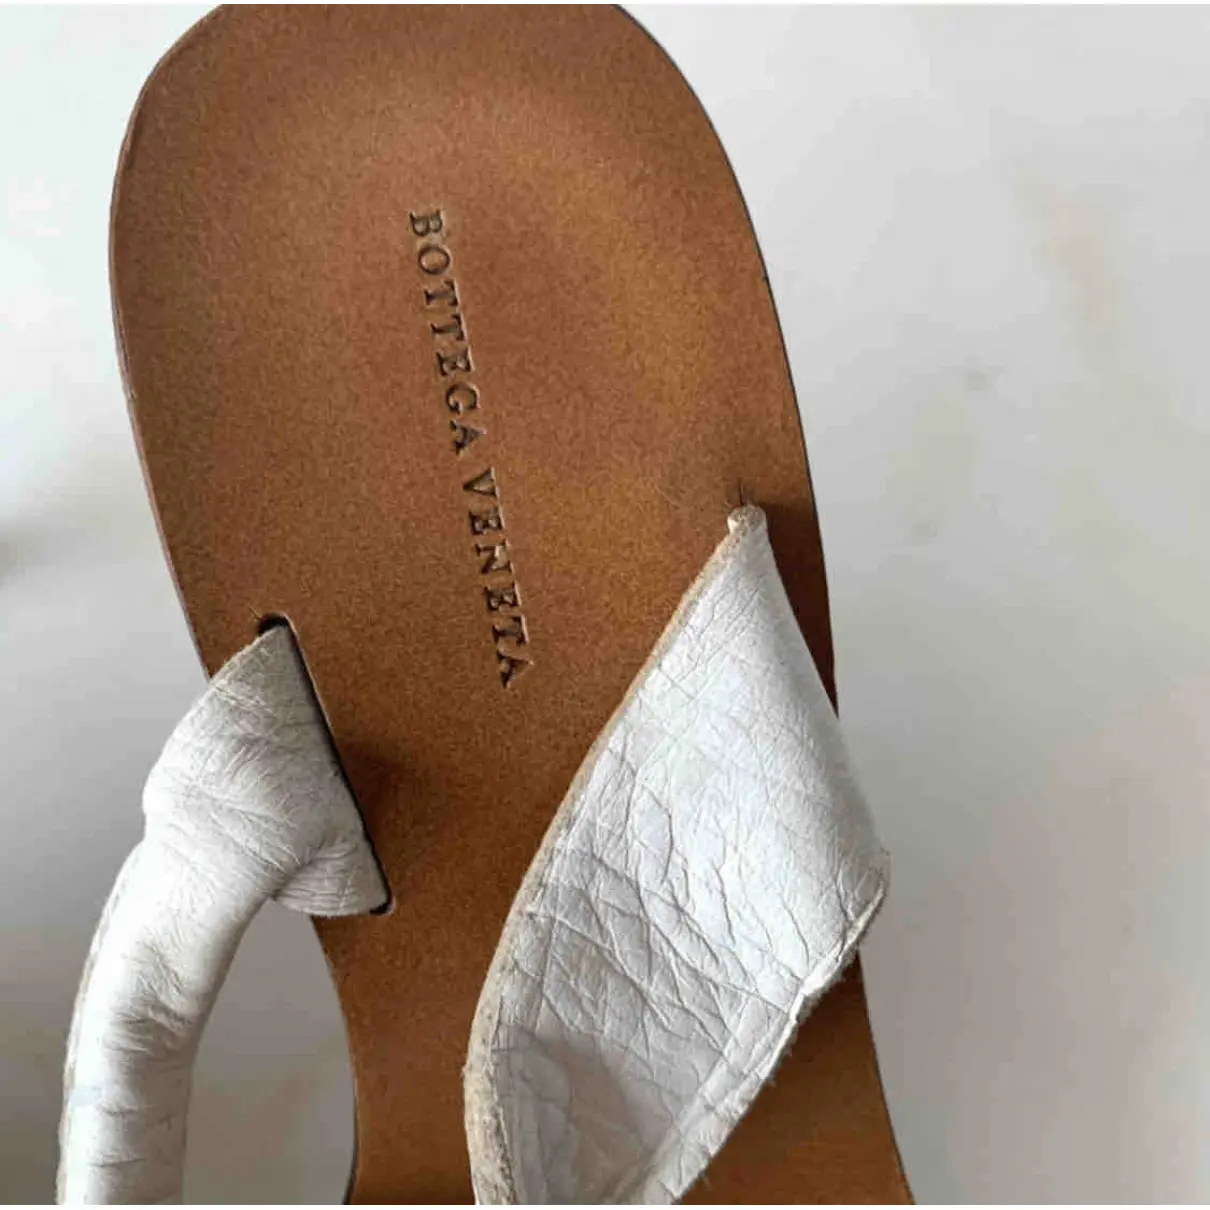 Luxury Bottega Veneta Sandals Women